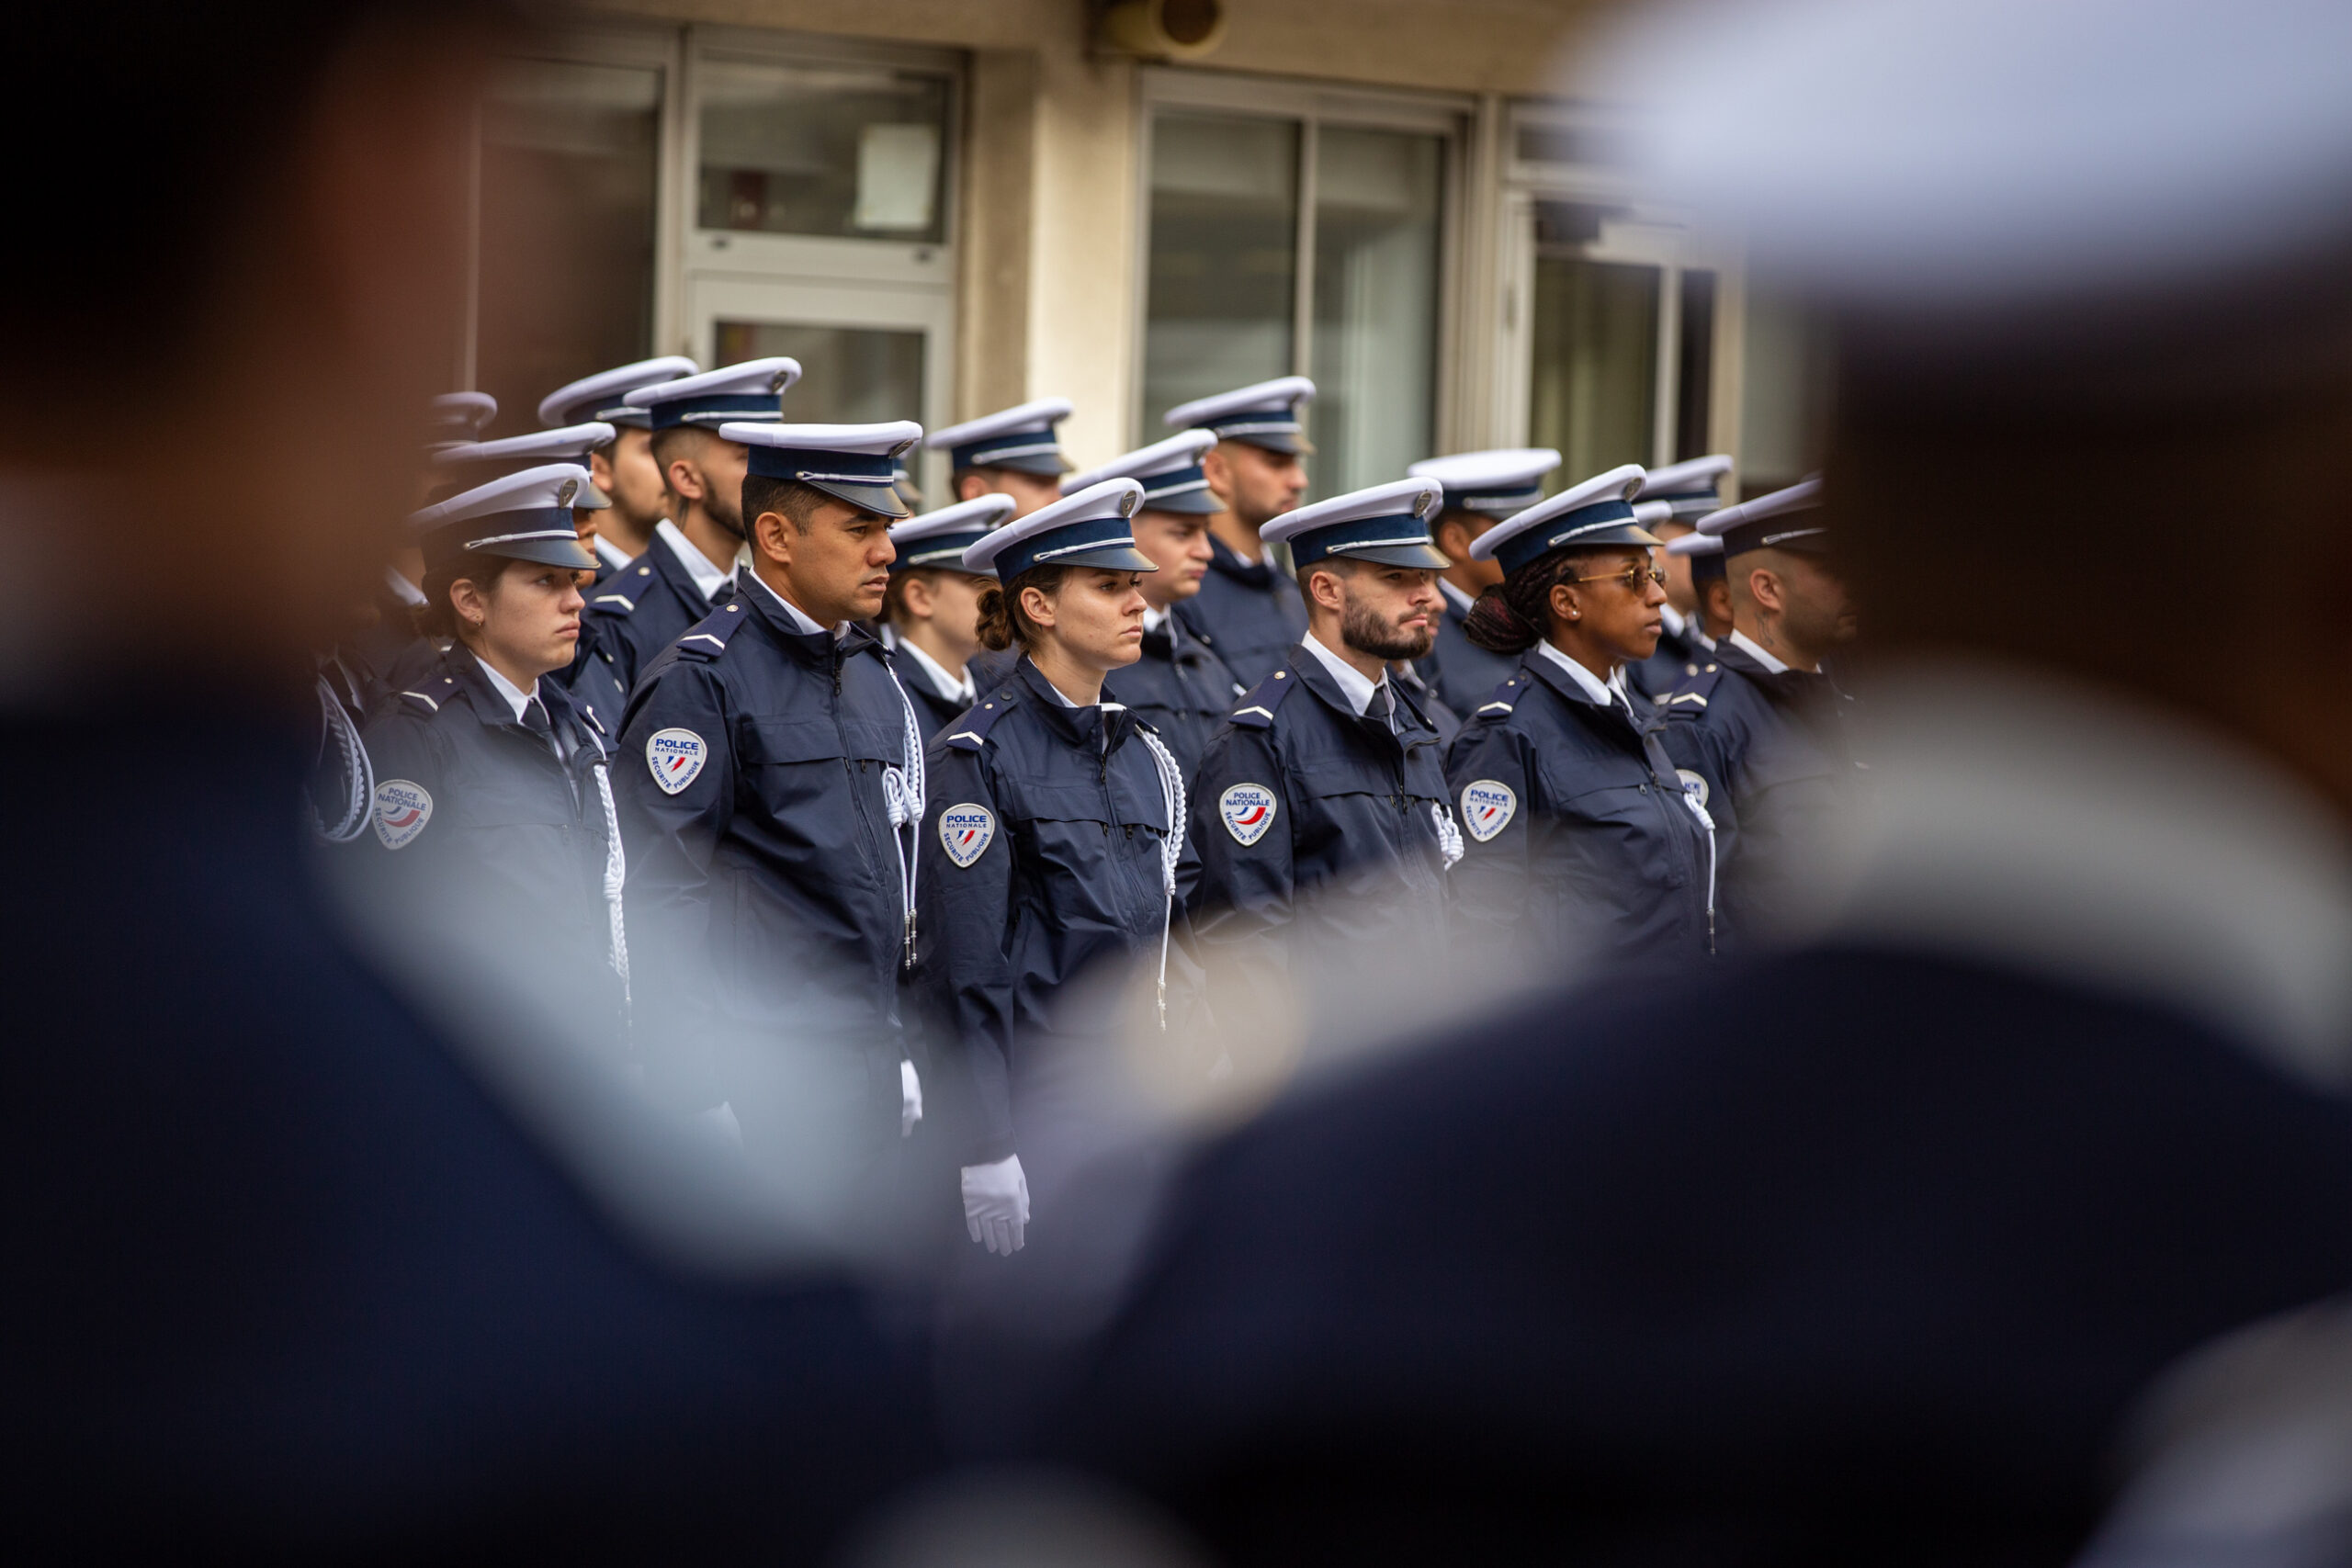 Le Ministre de l’Intérieur annonce 12 nouveaux policiers dans la Vienne conformément à la demande du député Sacha Houlié.